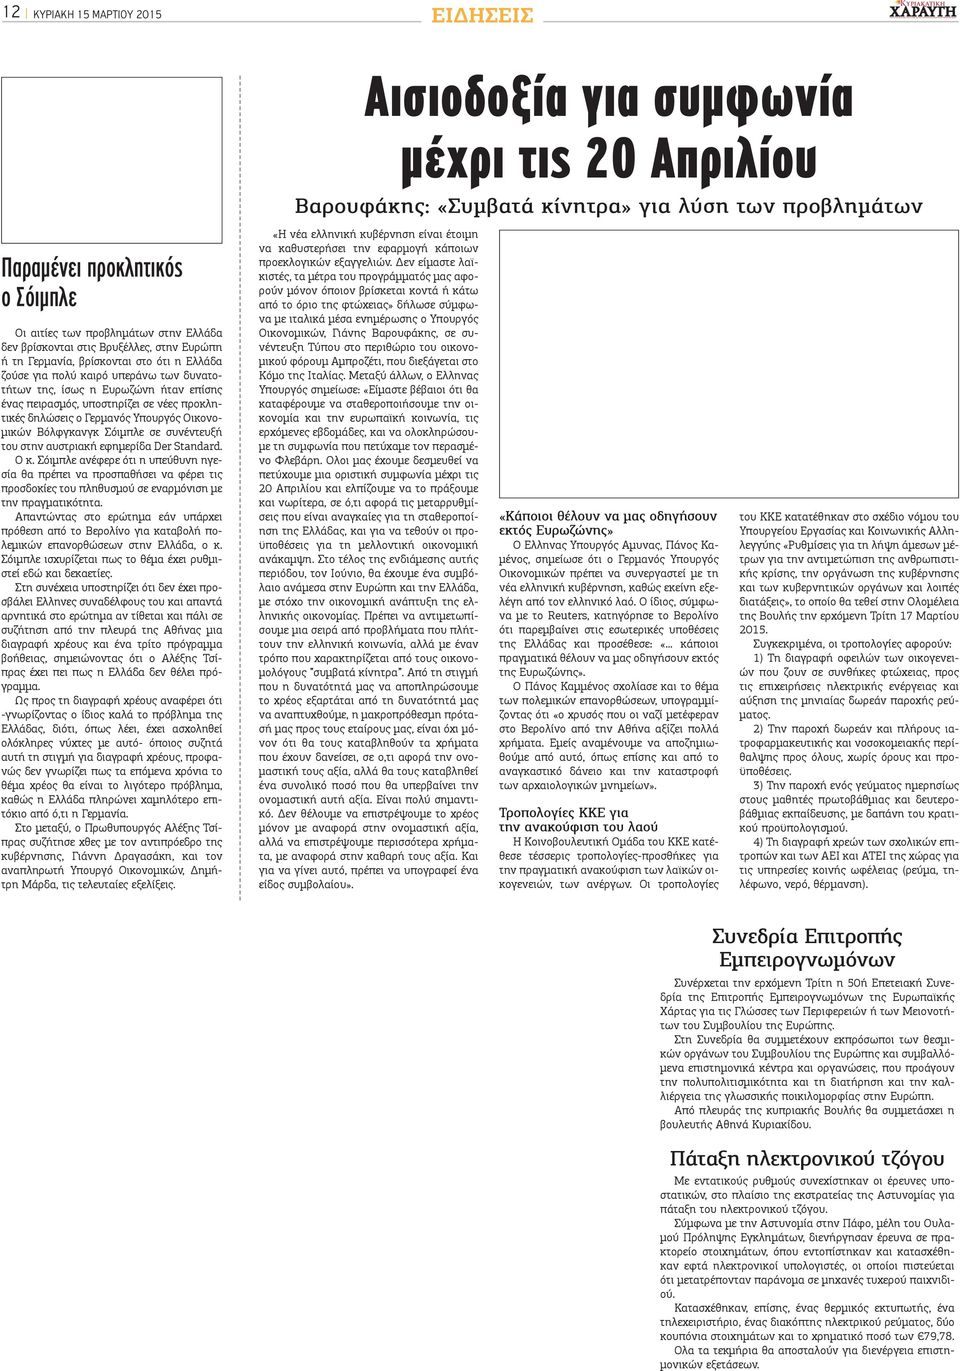 σε νέες προκλητικές δηλώσεις ο Γερμανός Υπουργός Οικονομικών Βόλφγκανγκ Σόιμπλε σε συνέντευξή του στην αυστριακή εφημερίδα Der Standard. Ο κ.